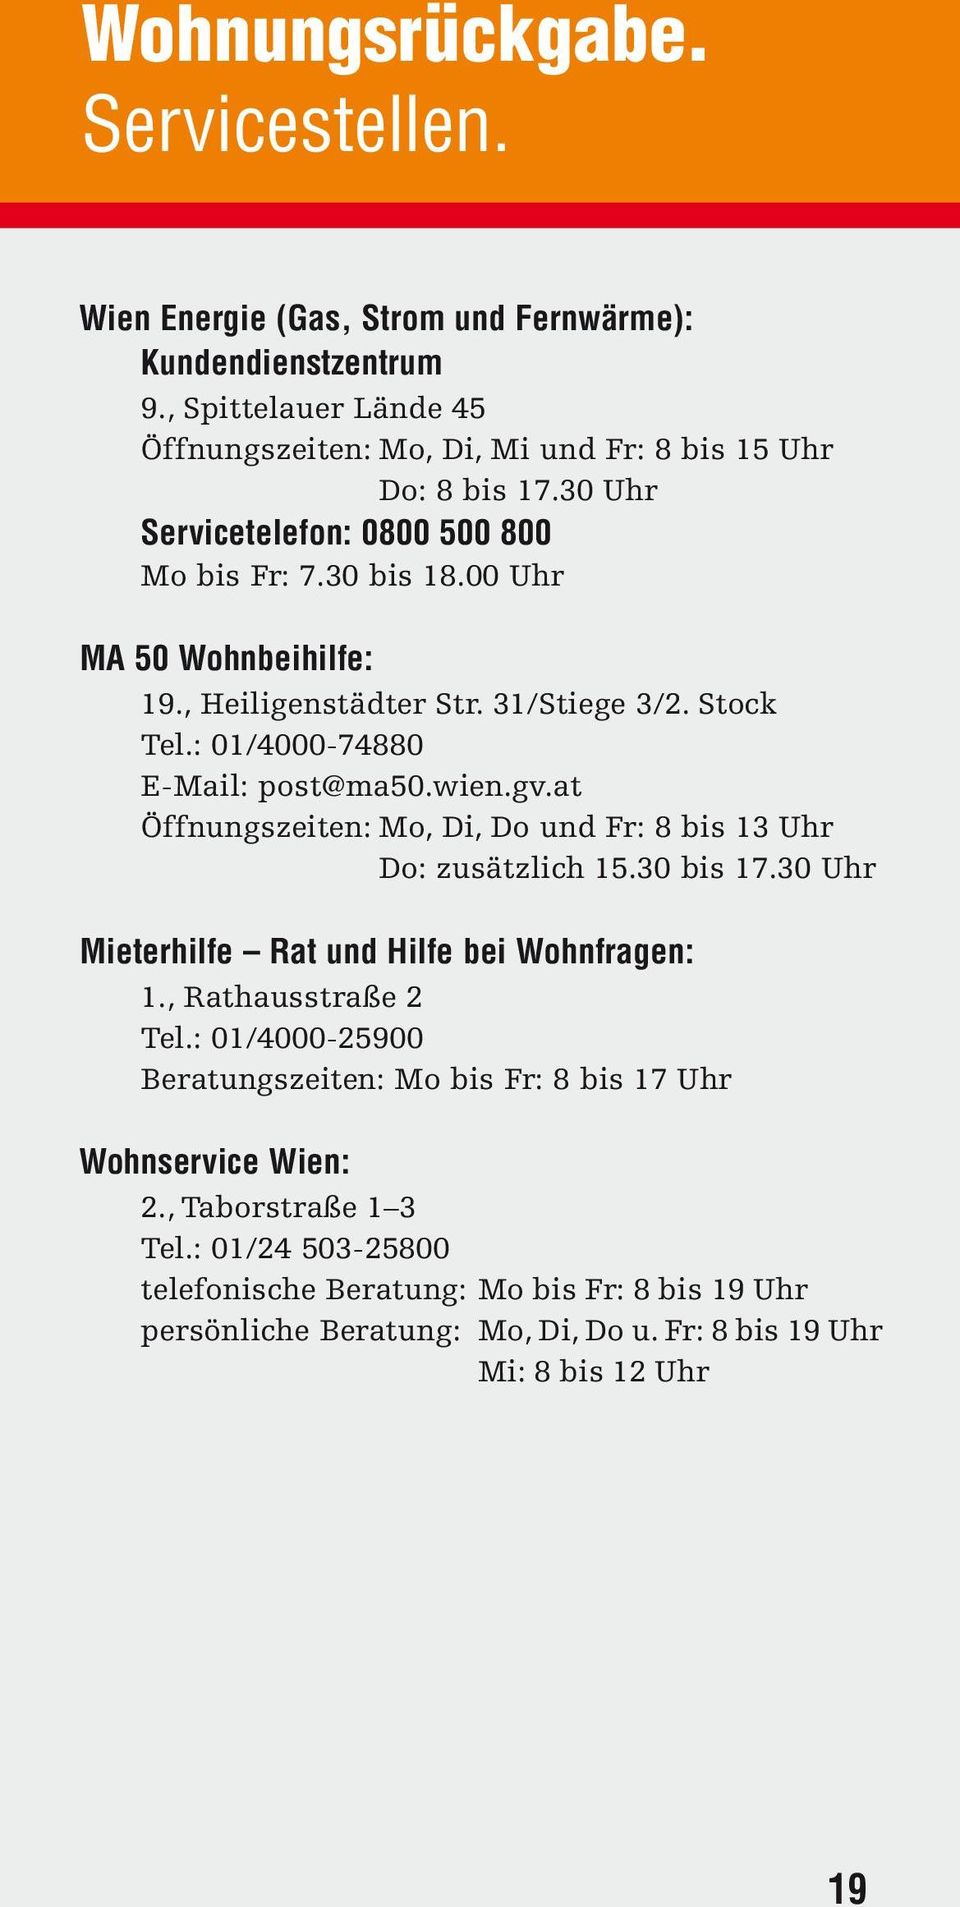 at Öffnungszeiten: Mo, Di, Do und Fr: 8 bis 13 Uhr Do: zusätzlich 15.30 bis 17.30 Uhr Mieterhilfe Rat und Hilfe bei Wohnfragen: 1., Rathausstraße 2 Tel.